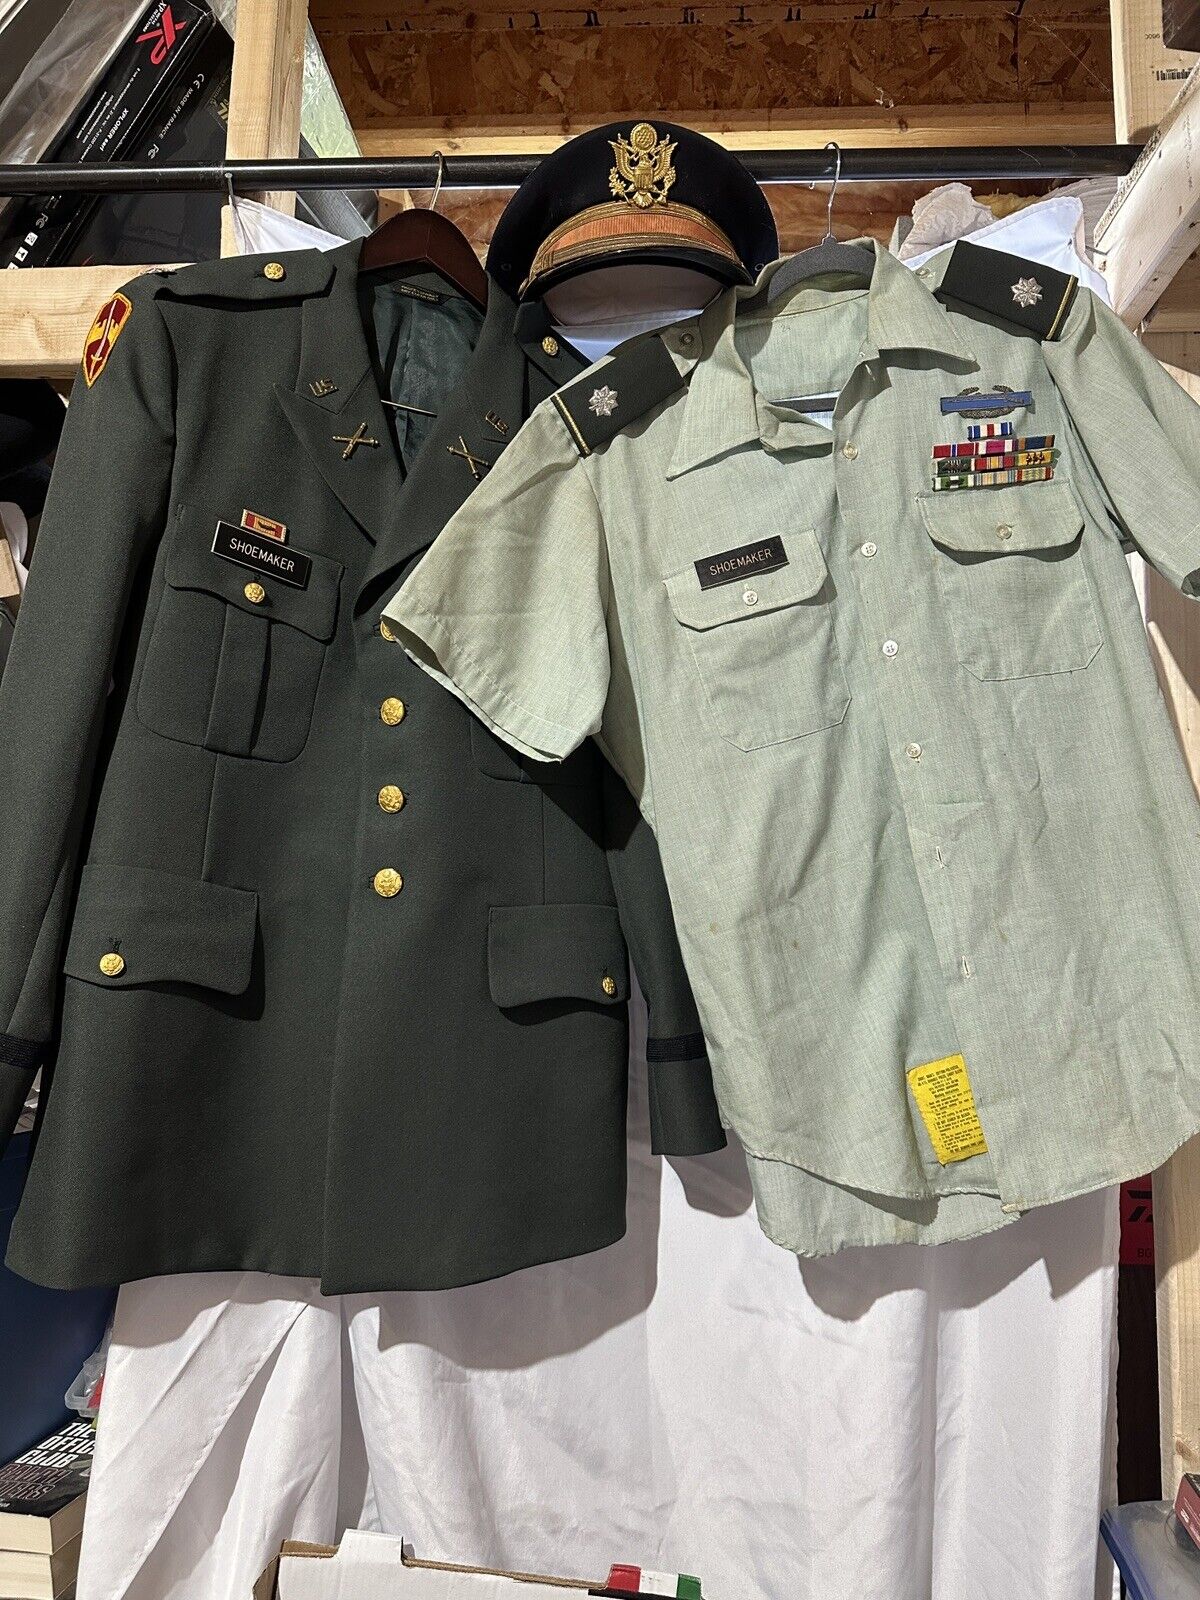 Vietnam War Era US Army Officer's Class A Uniform Jacket, Shirt & Hat NAMED